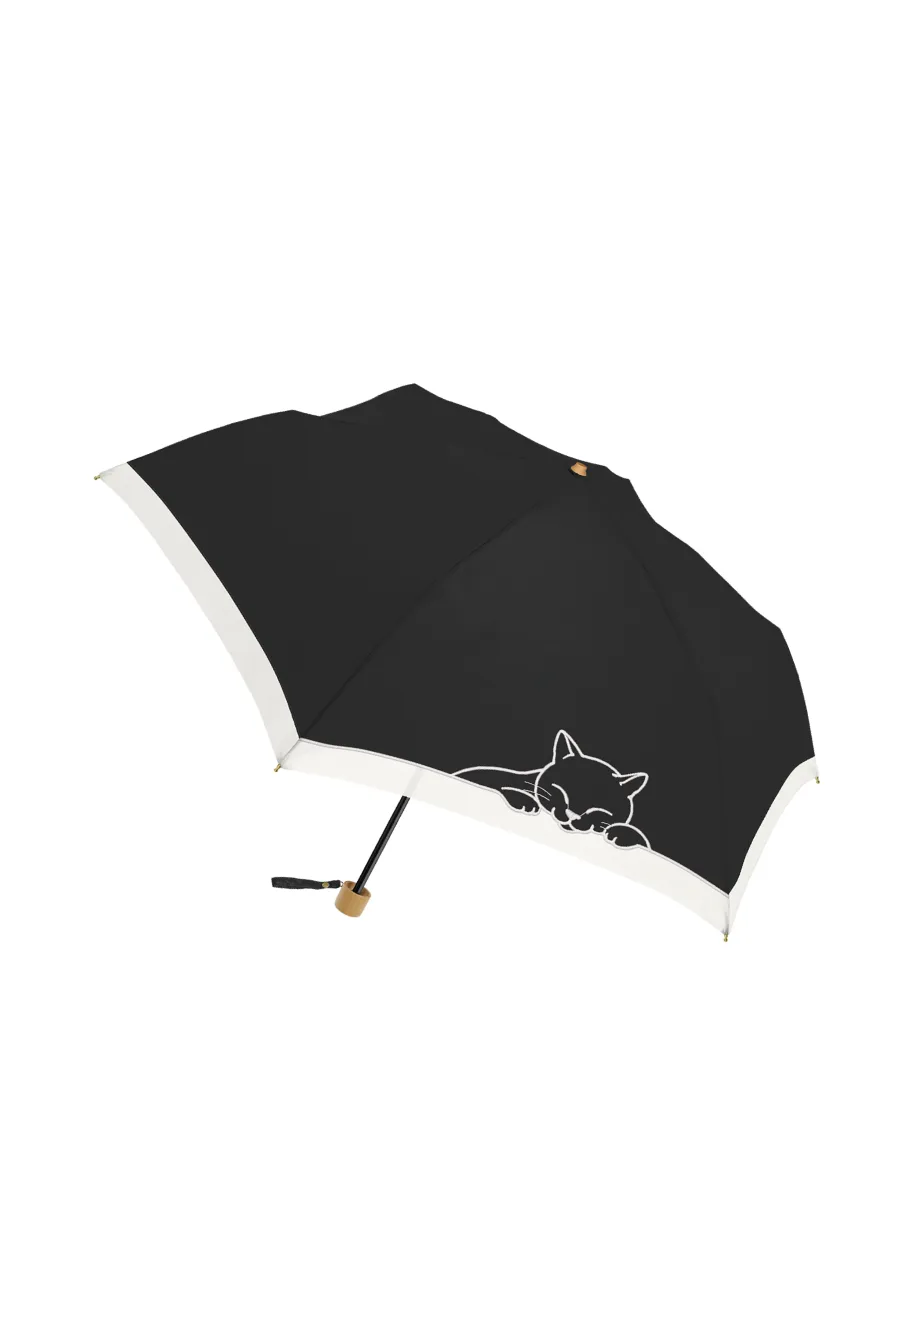 黒コーティング晴雨兼用折りたたみ傘-刺繍タイプ-